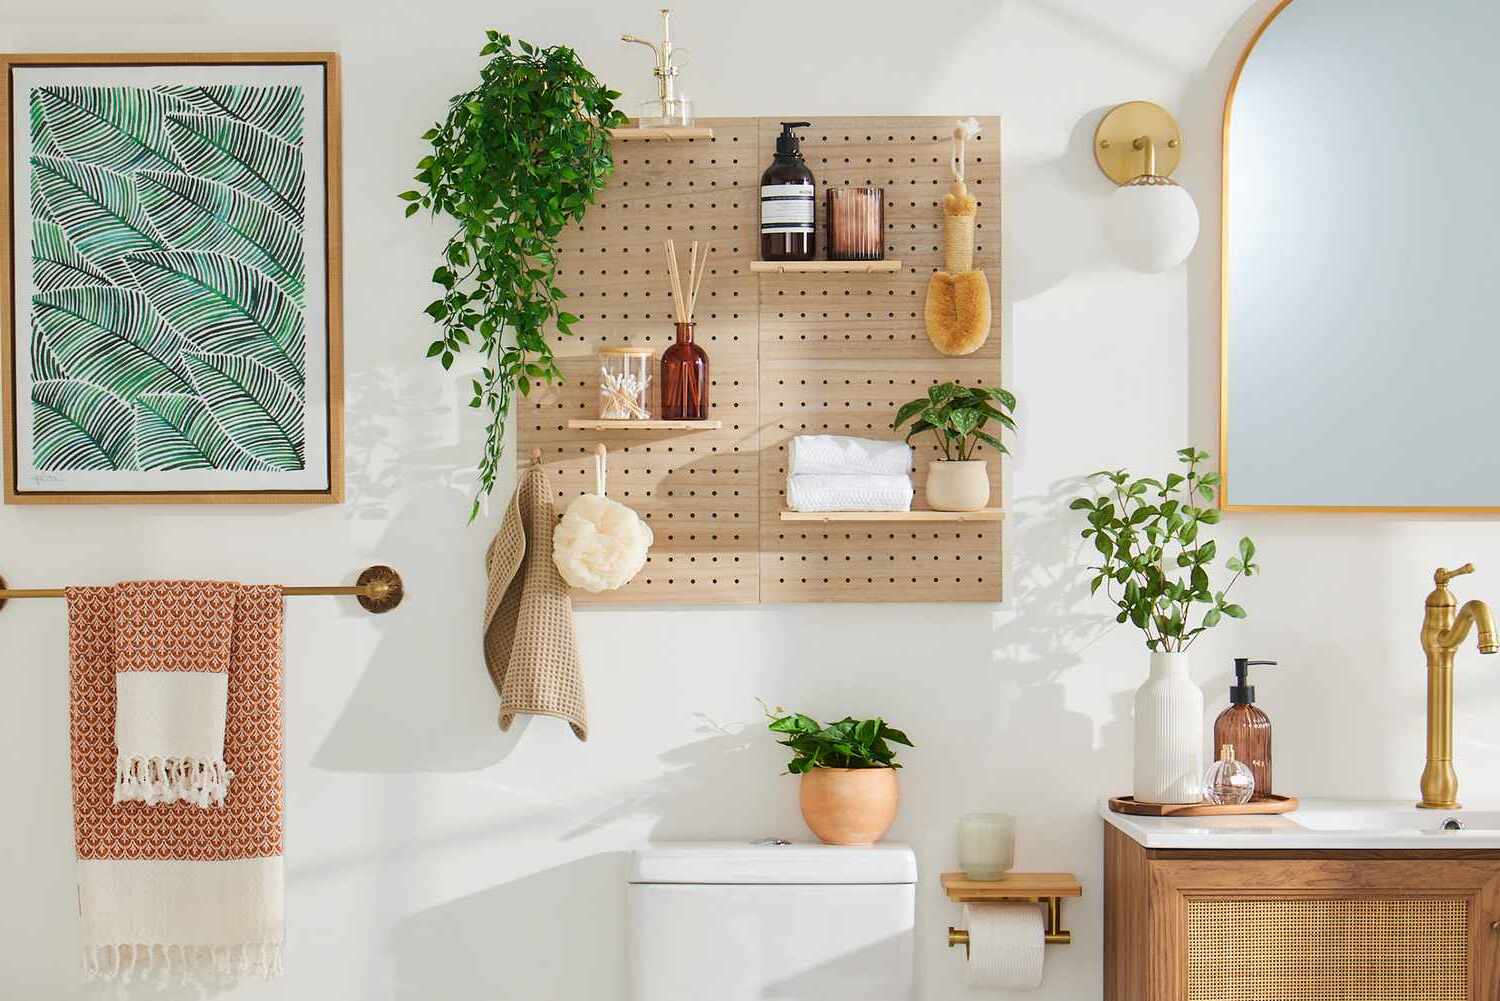 DIY Bathroom Wall Organizer Ideas